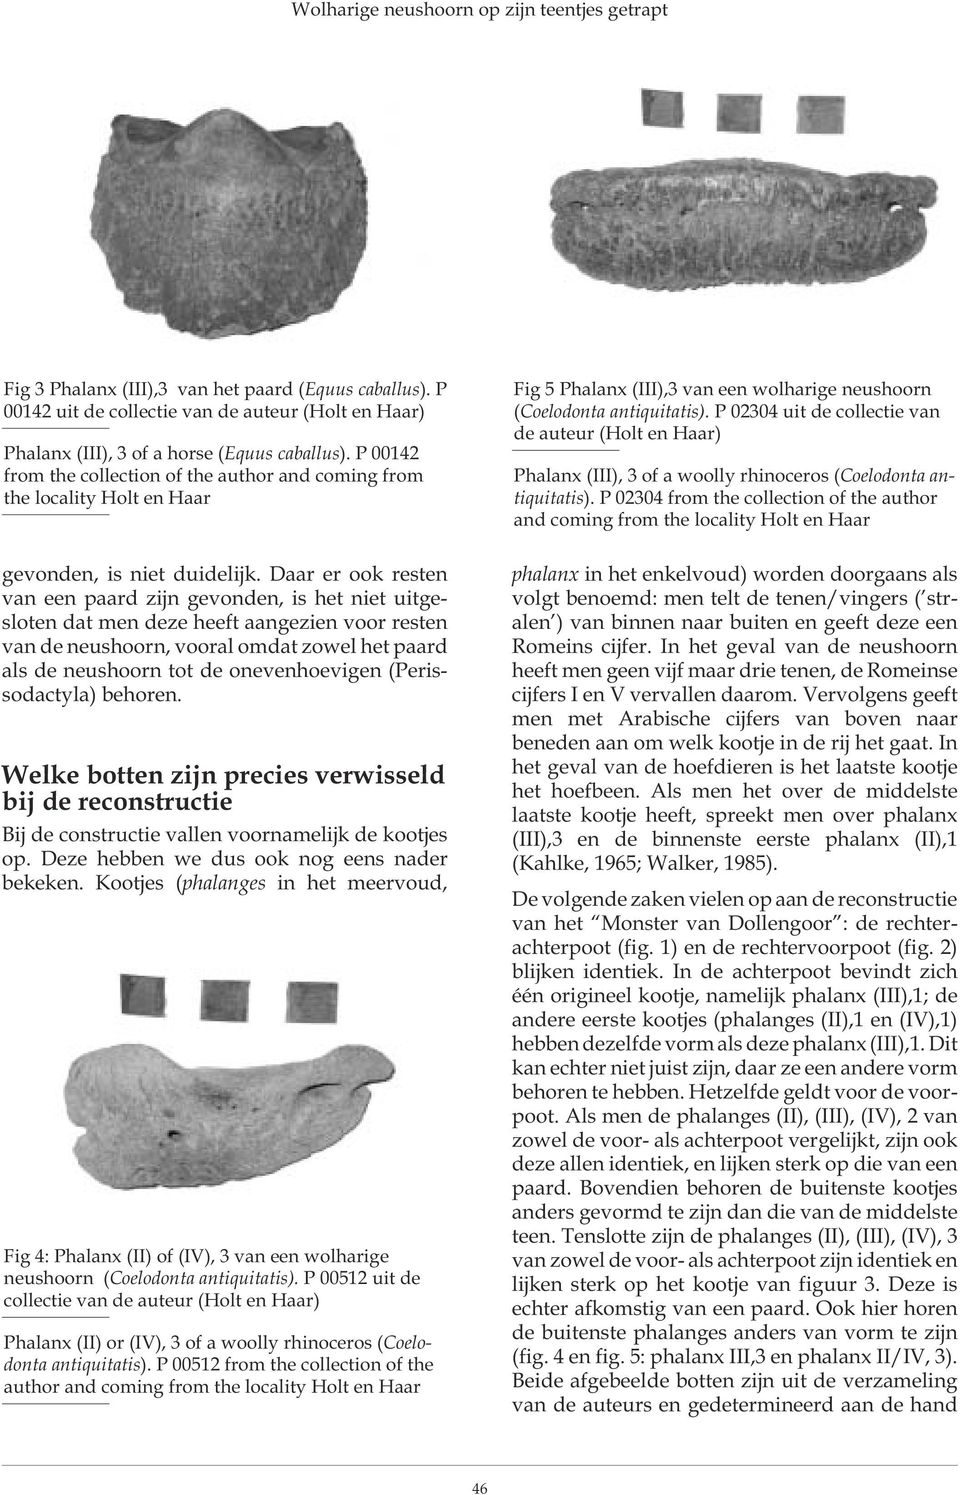 P 02304 uit de collectie van de auteur (Holt en Haar) Phalanx (III), 3 of a woolly rhinoceros (Coelodonta antiquitatis).